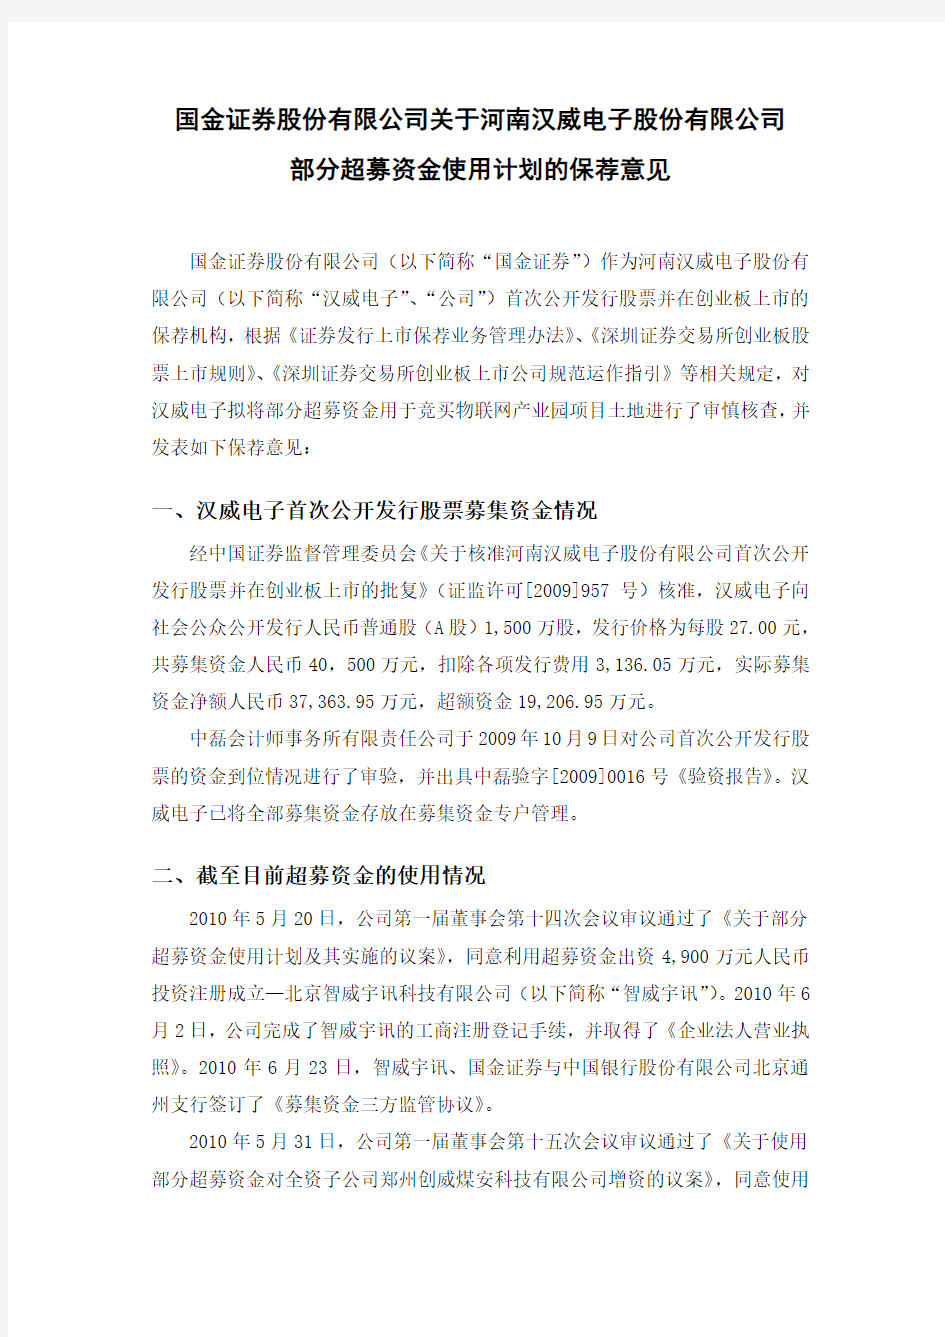 国金证券股份有限公司关于河南汉威电子股份有限公司部分超募资金